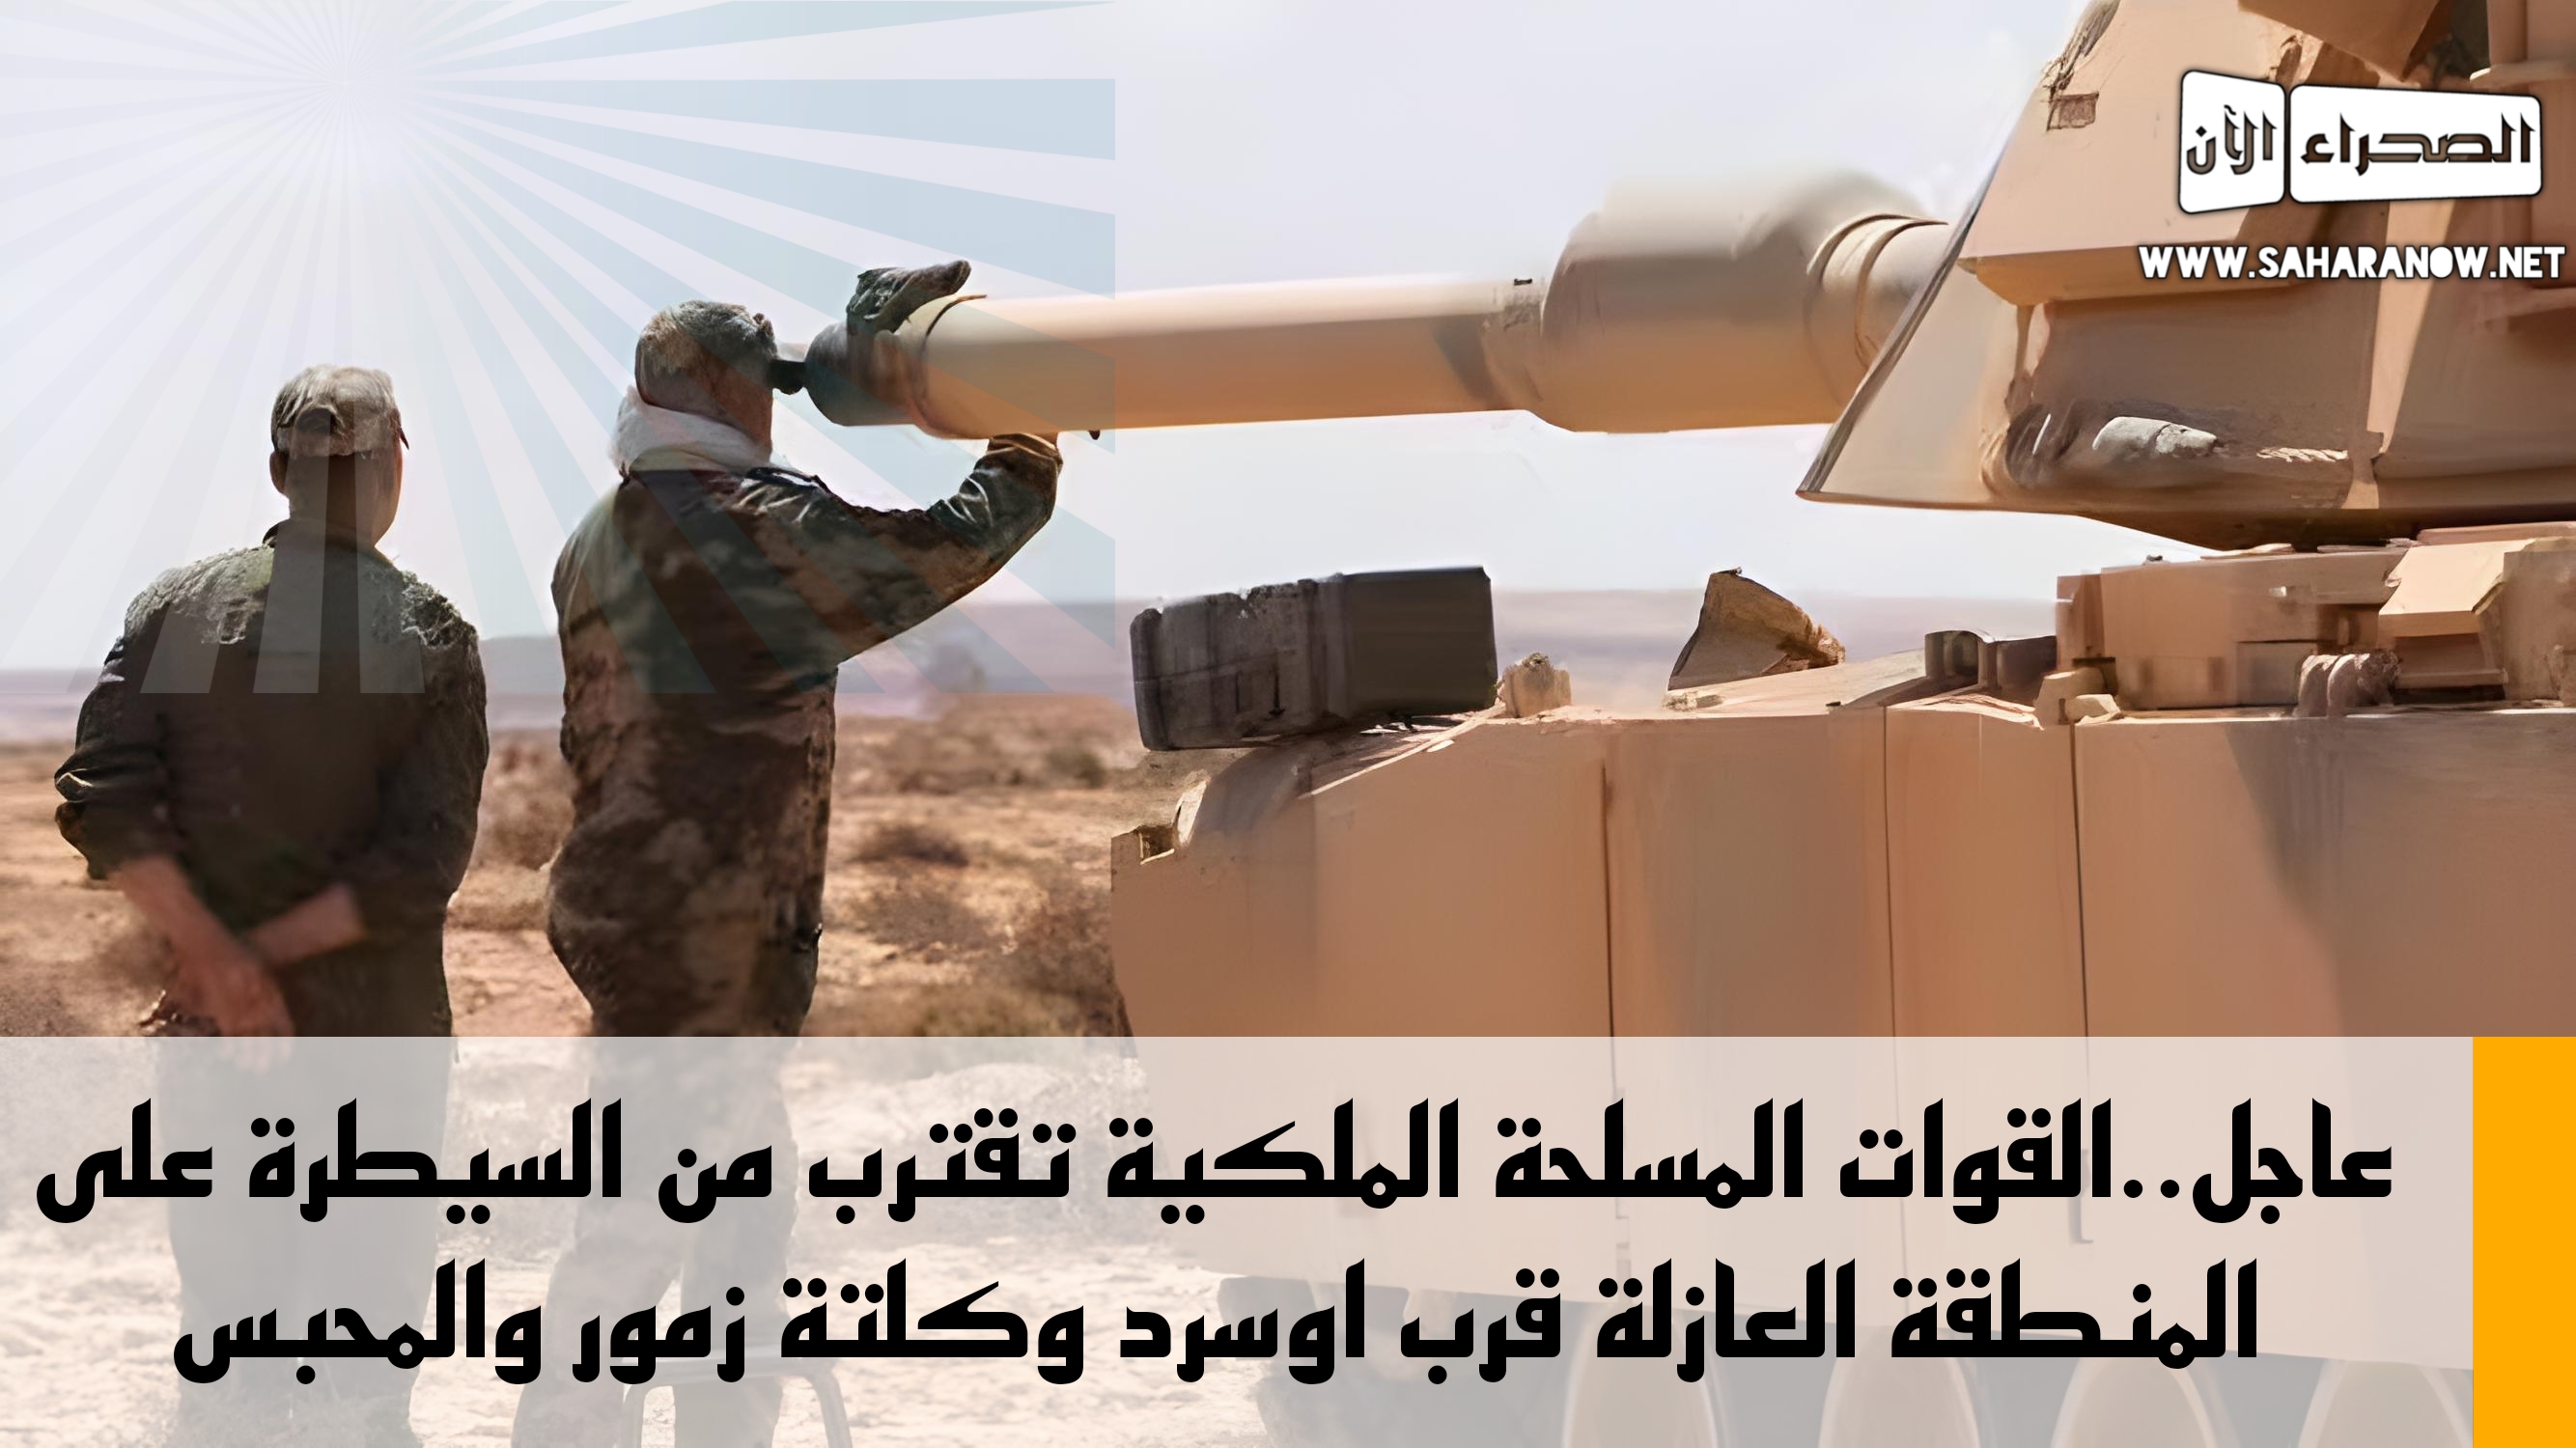 عاجل..القوات المسلحة الملكية تقترب من السيطرة على المنطقة العازلة قرب اوسرد وكلتة زمور والمحبس